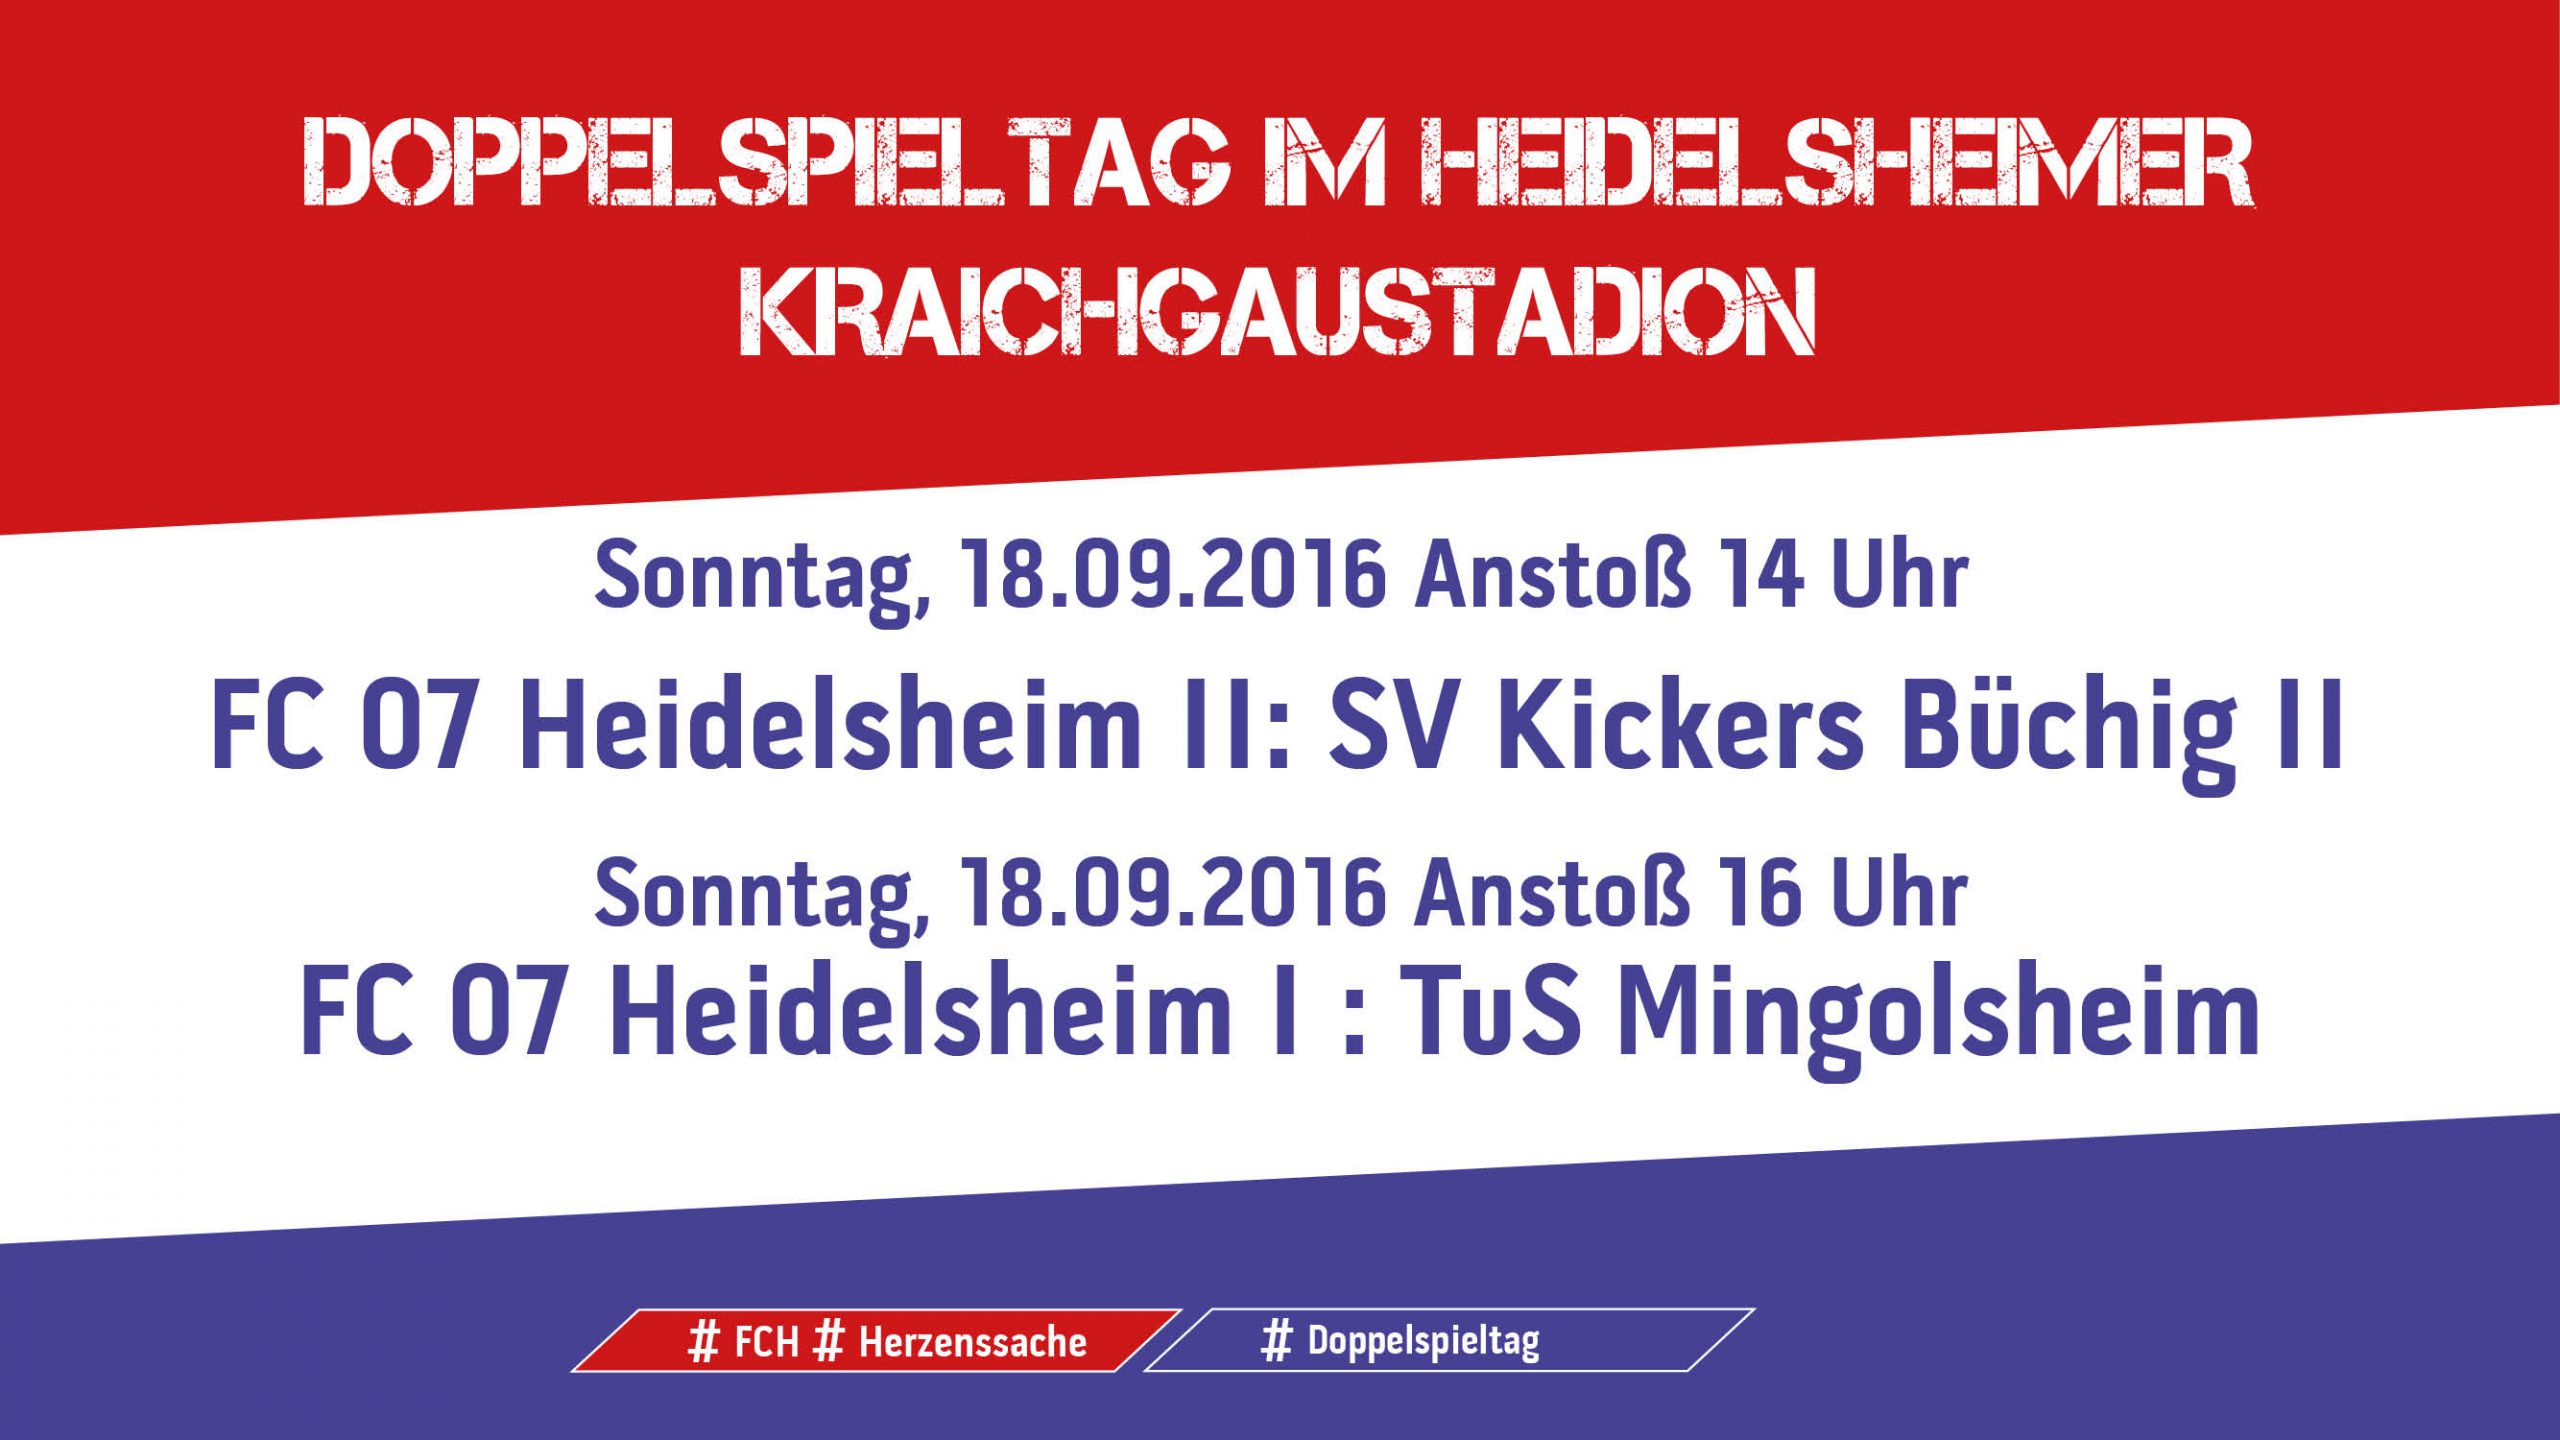 Doppelspieltag im Heidelsheimer Kraichgaustadion am kommenden Sonntag, 18. September 2016